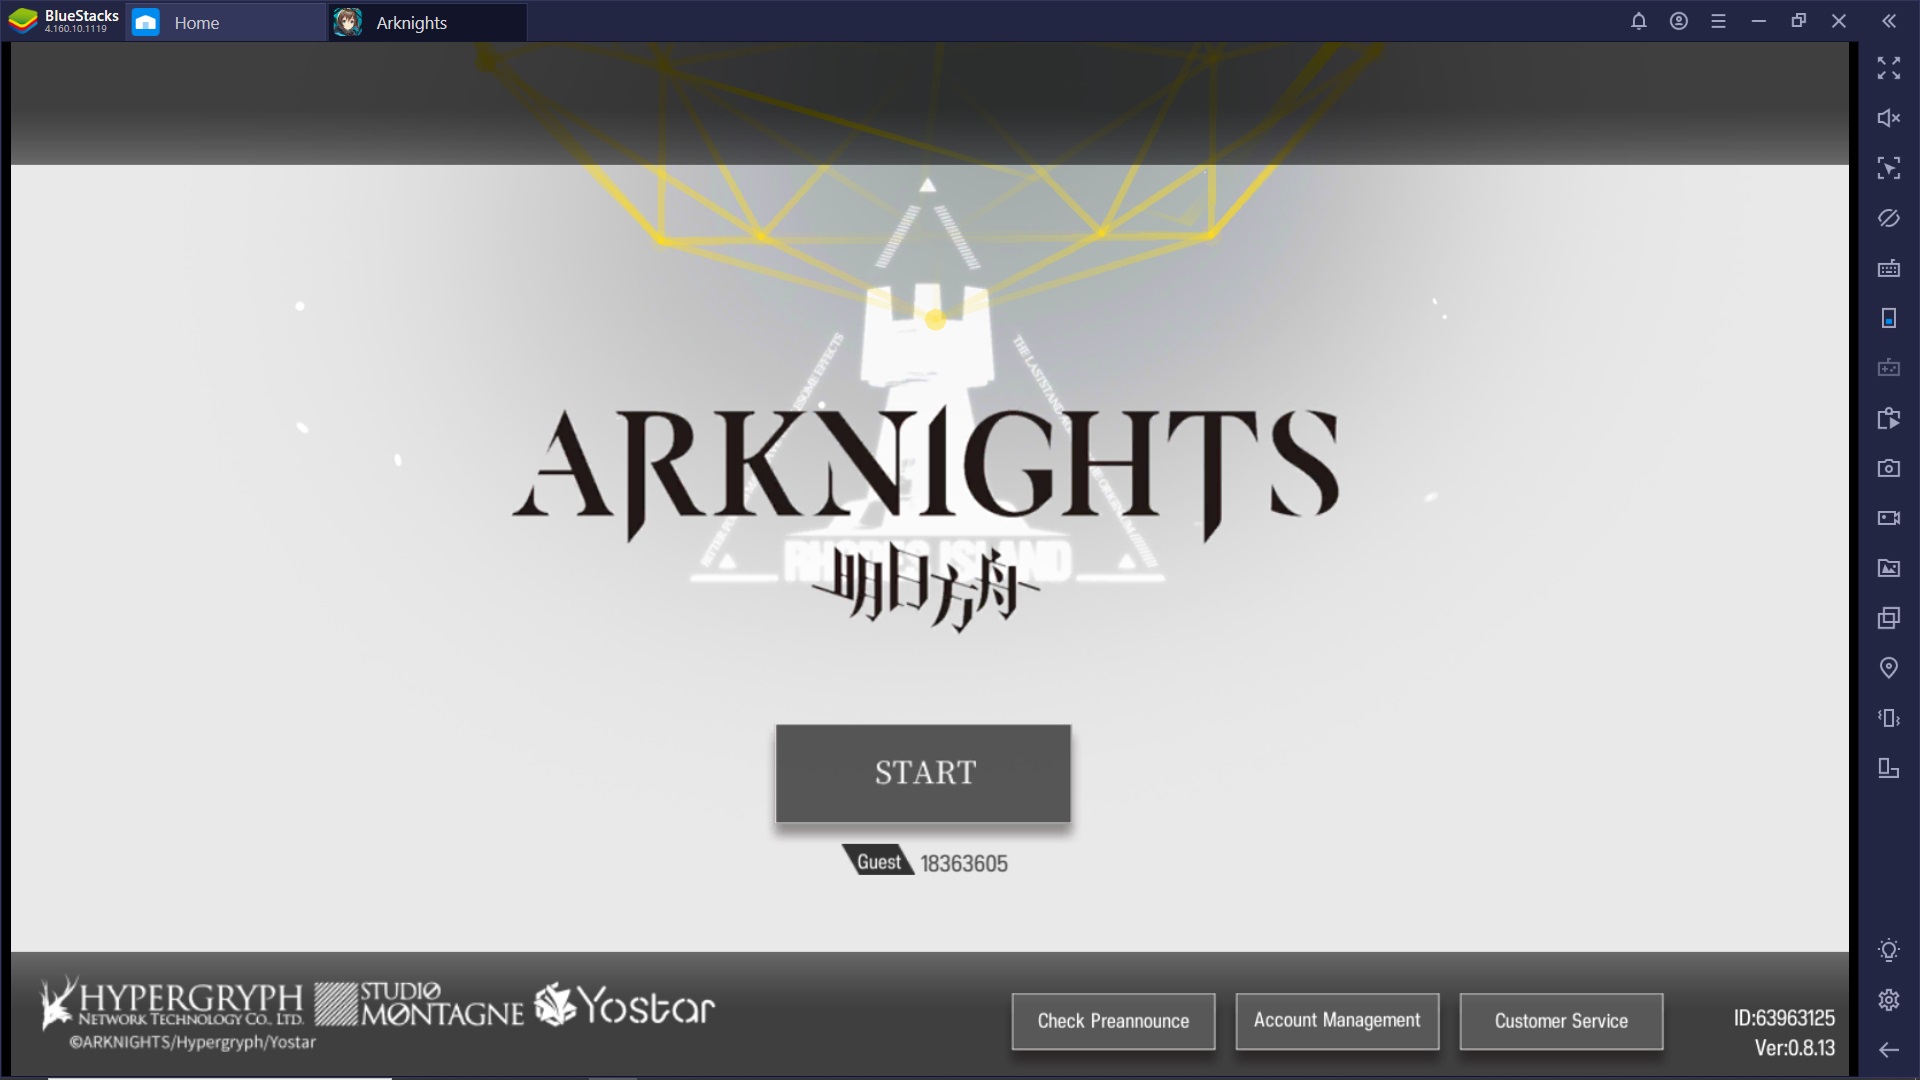 Arknights è disponibile su PC – Migliora la tua strategia con Bluestacks!